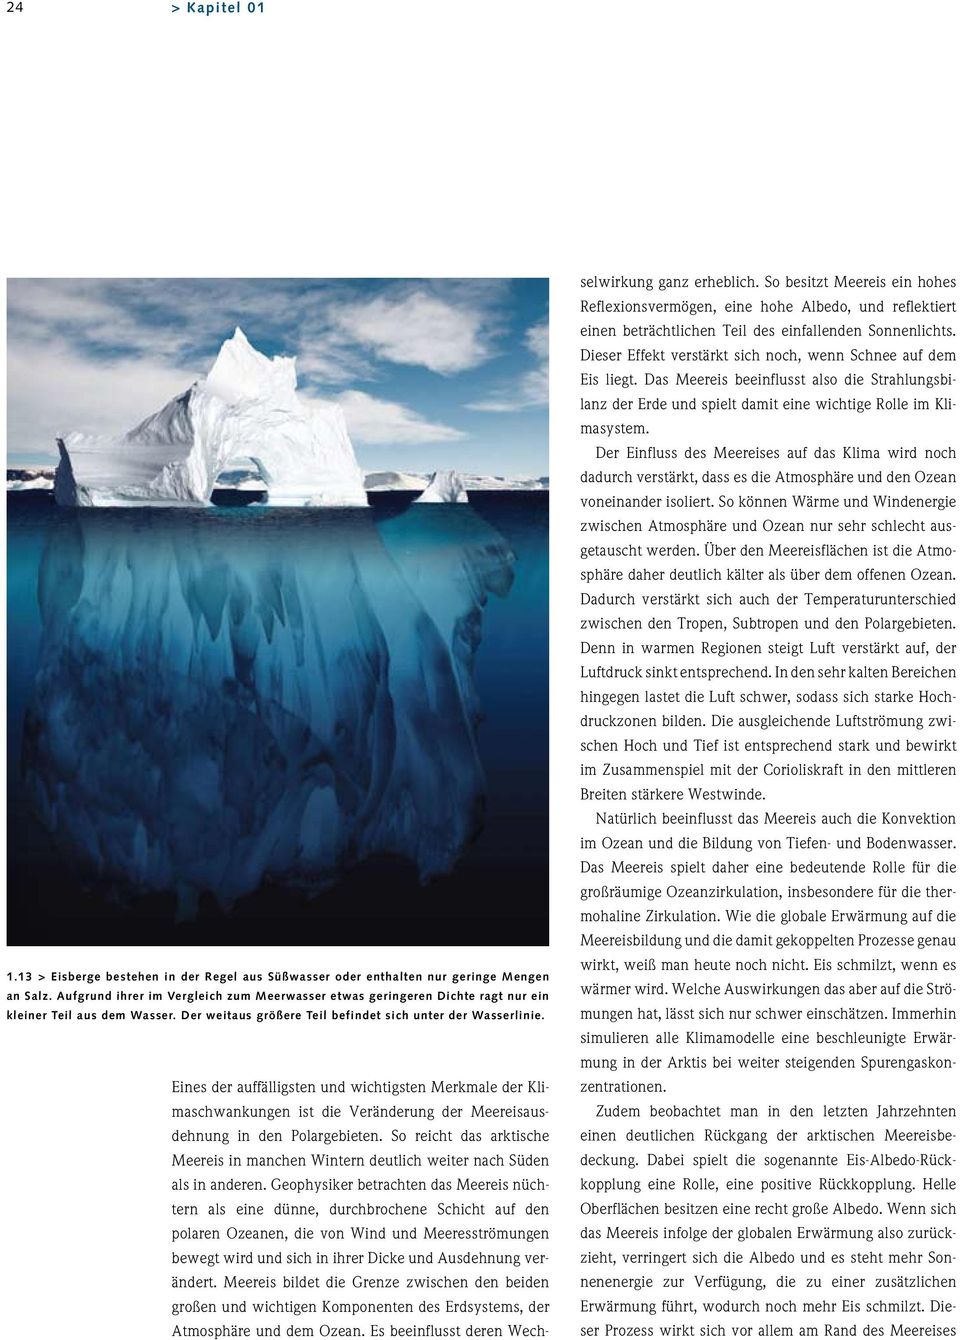 Eines der auffälligsten und wichtigsten Merkmale der Klimaschwankungen ist die Veränderung der Meereisausdehnung in den Polargebieten.